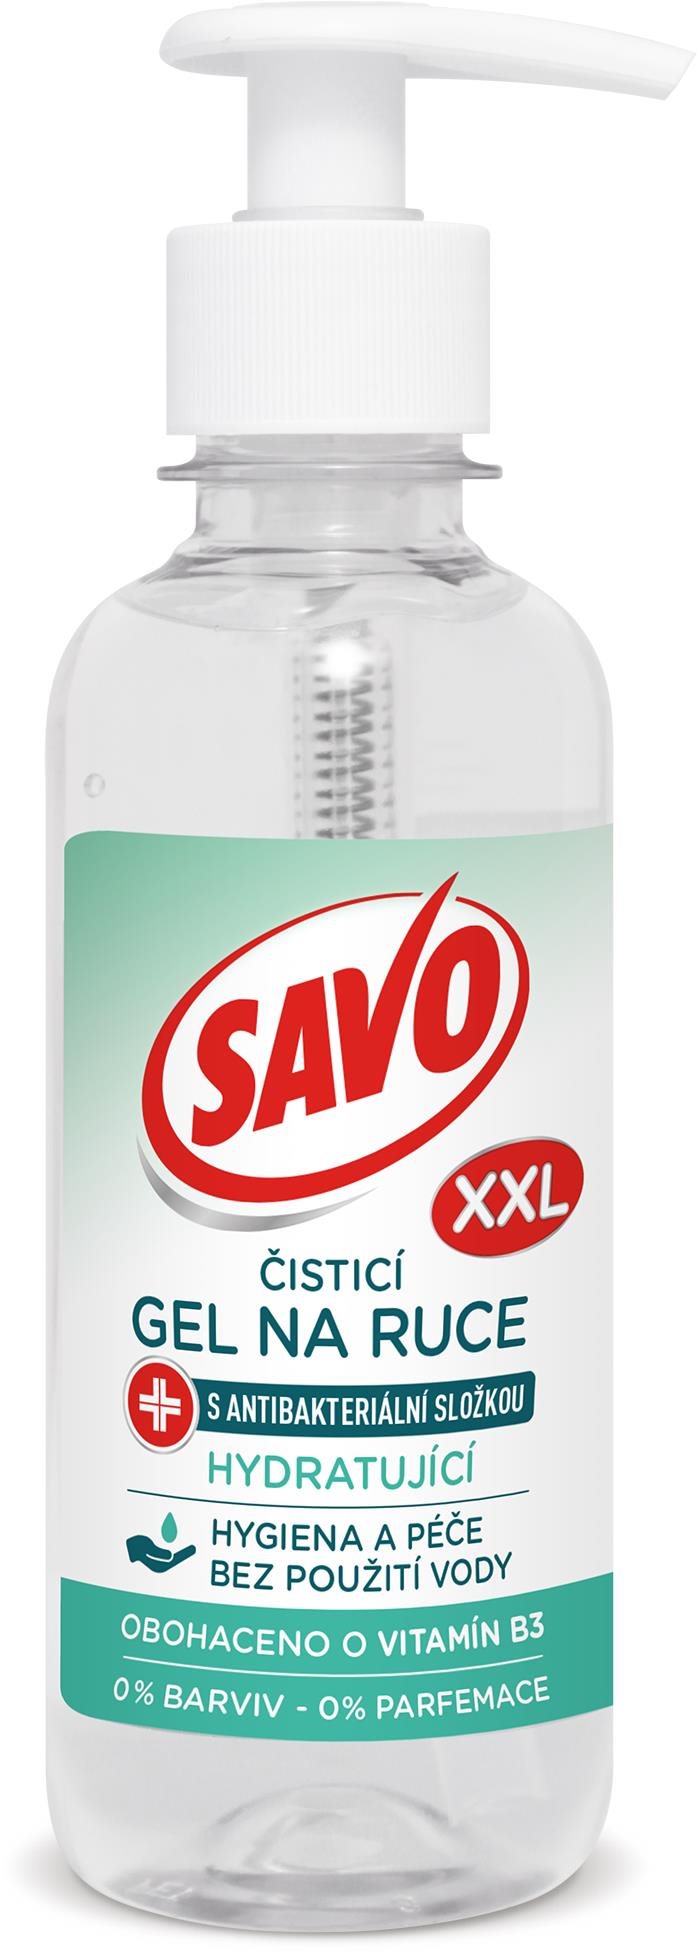 SAVO Kéztisztító gél antibakteriális és hidratáló összetevővel, 250 ml